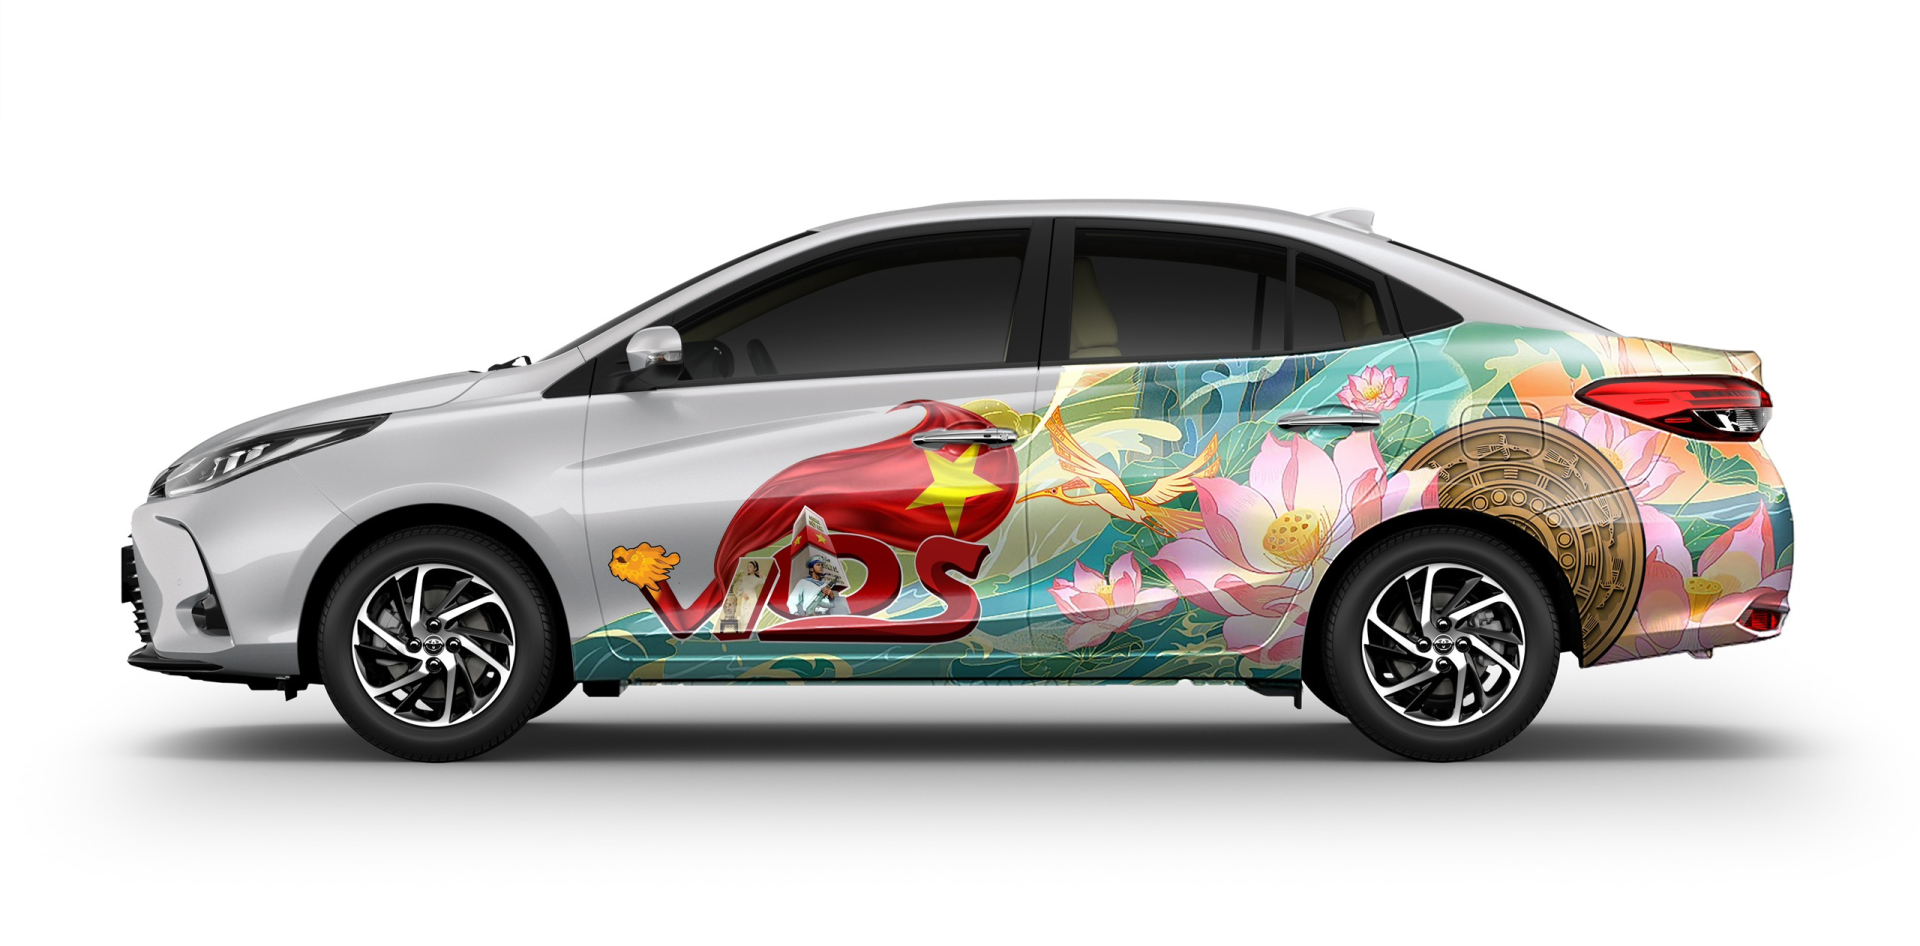 “Xế sáng tạo, khoe diện mạo' của Toyota Vios công bố kết quả chung cuộc - ảnh 3